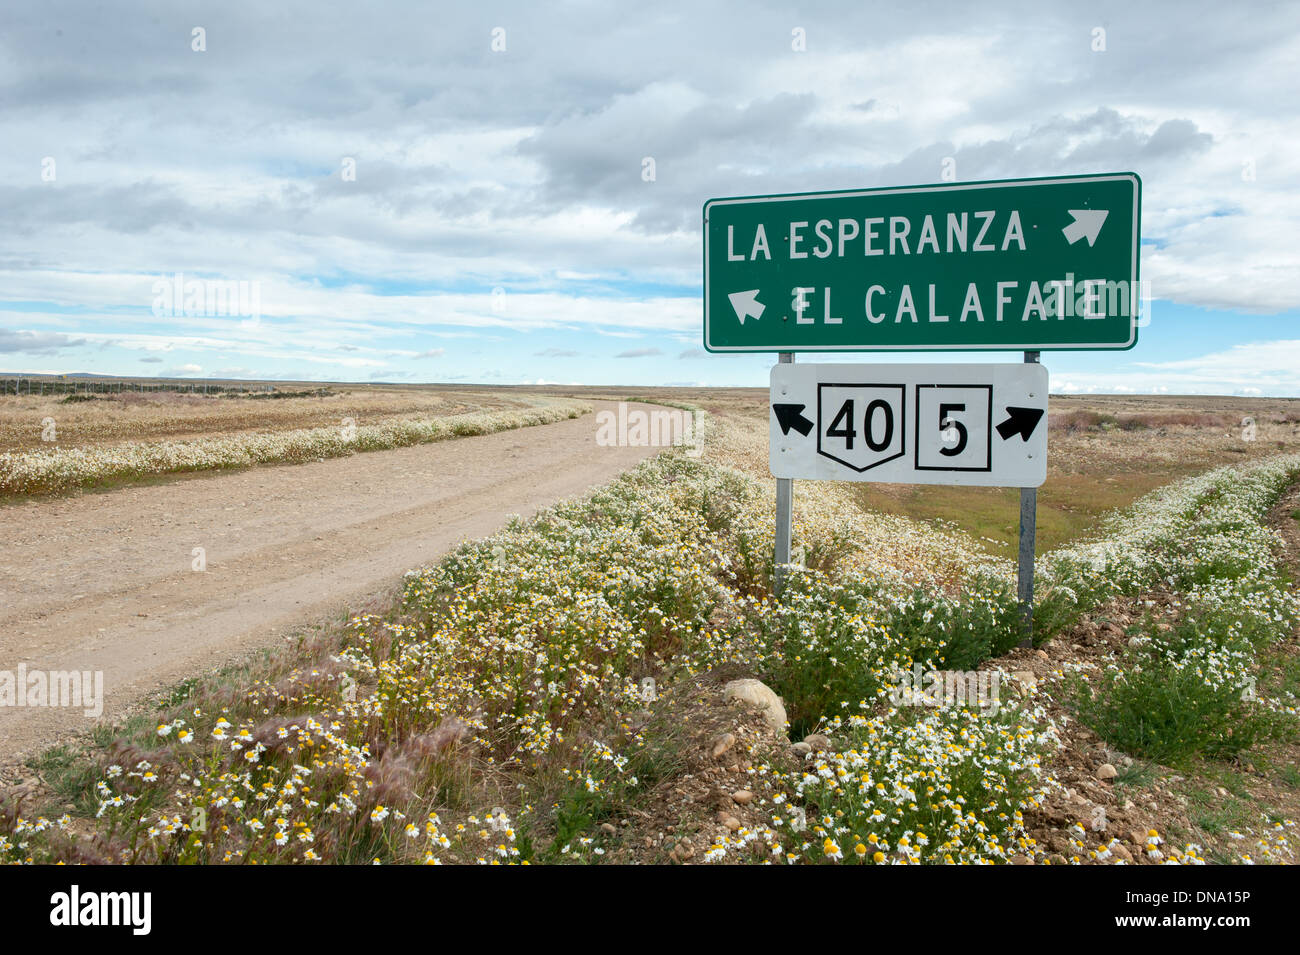 Ruta 40 (route 40) signe de route dans le sud de l'Argentine Banque D'Images